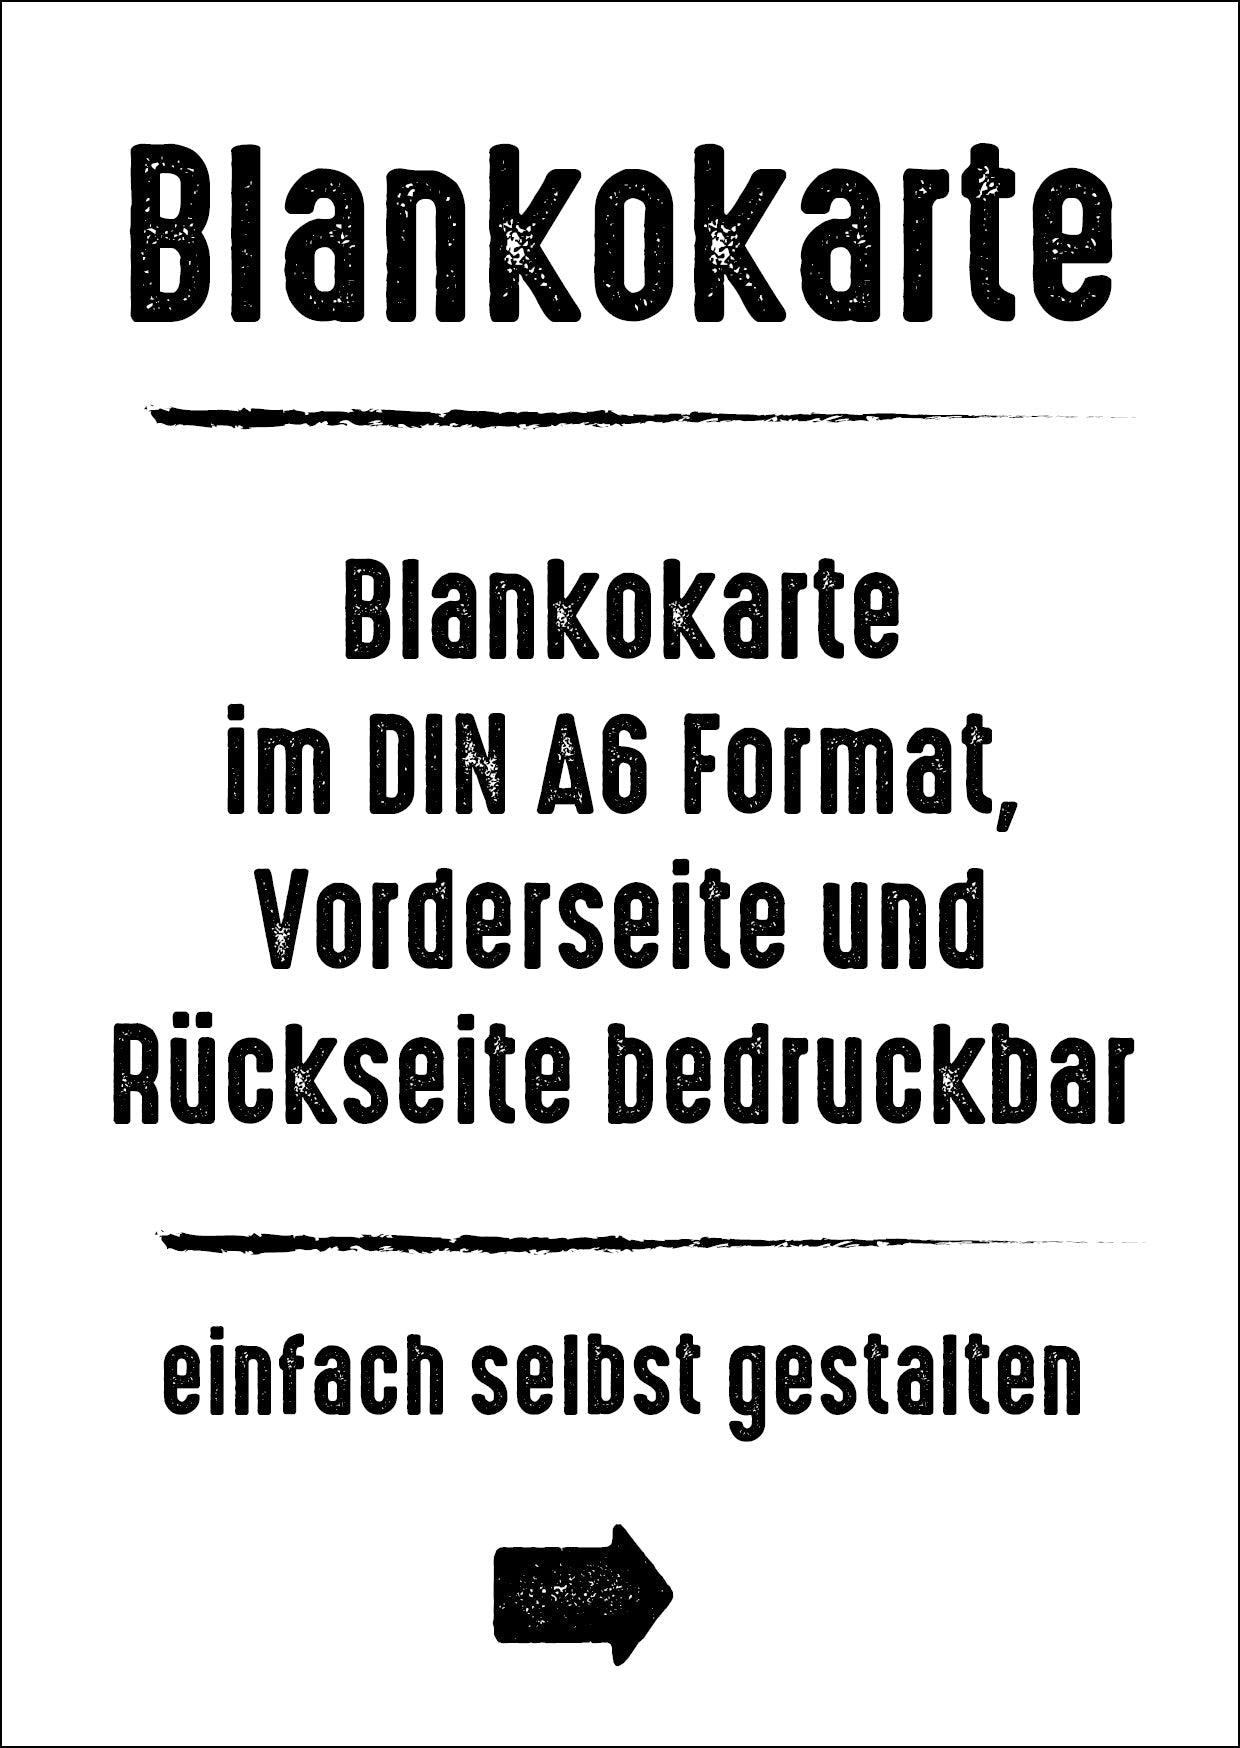 Blankokarte DIN A6 - Hochformat weiß Individuelle Einladung